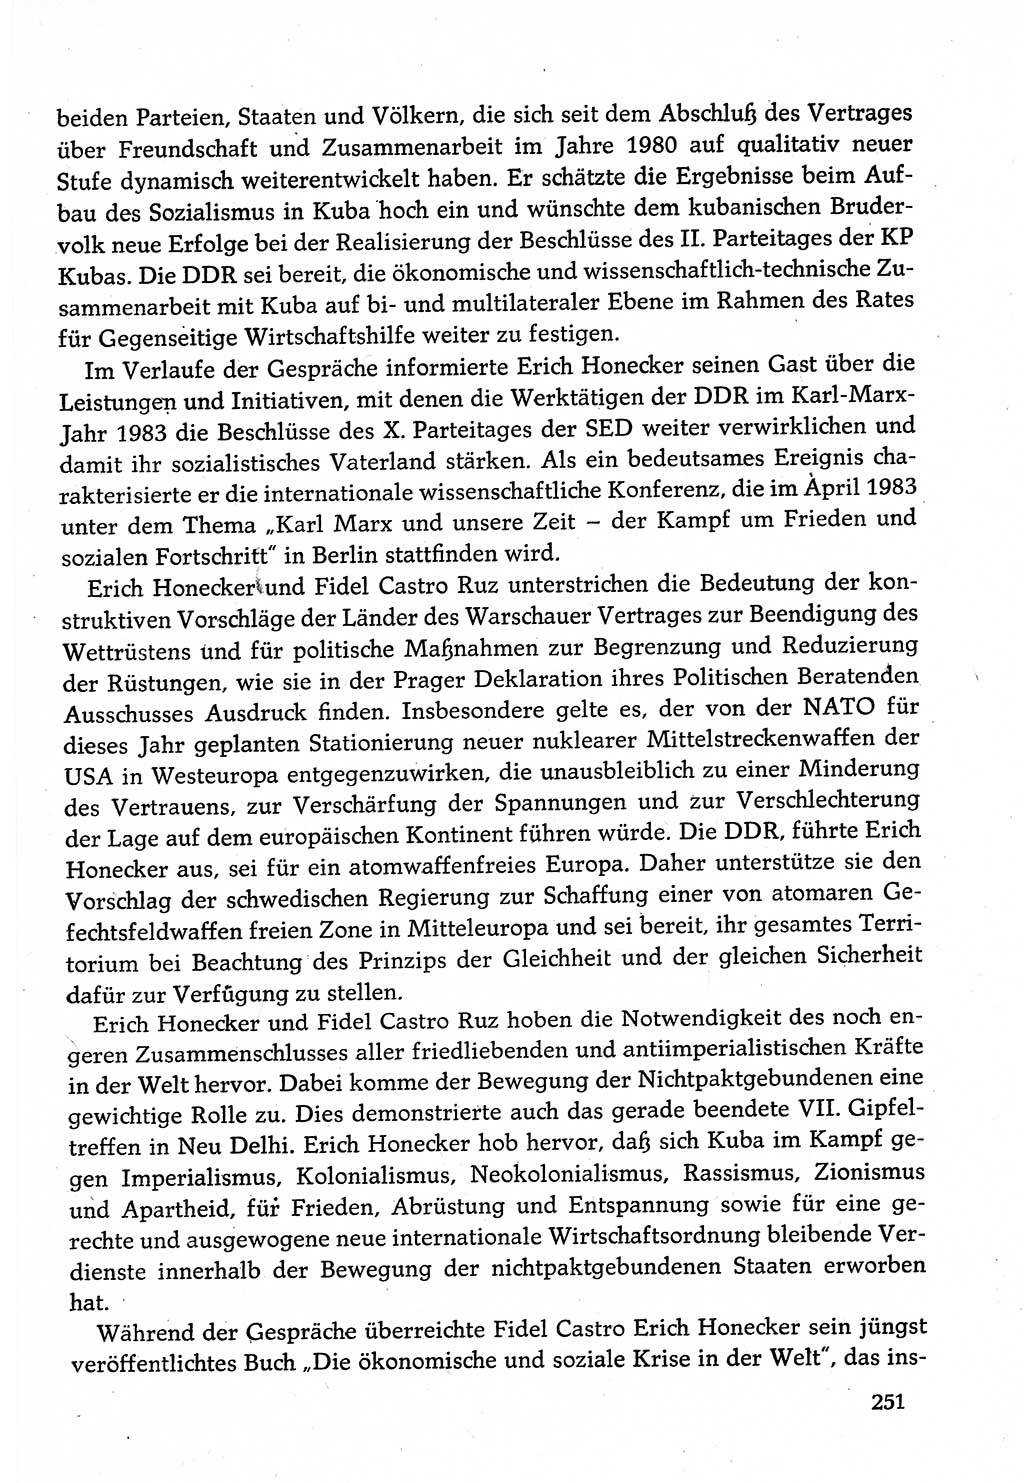 Dokumente der Sozialistischen Einheitspartei Deutschlands (SED) [Deutsche Demokratische Republik (DDR)] 1982-1983, Seite 251 (Dok. SED DDR 1982-1983, S. 251)